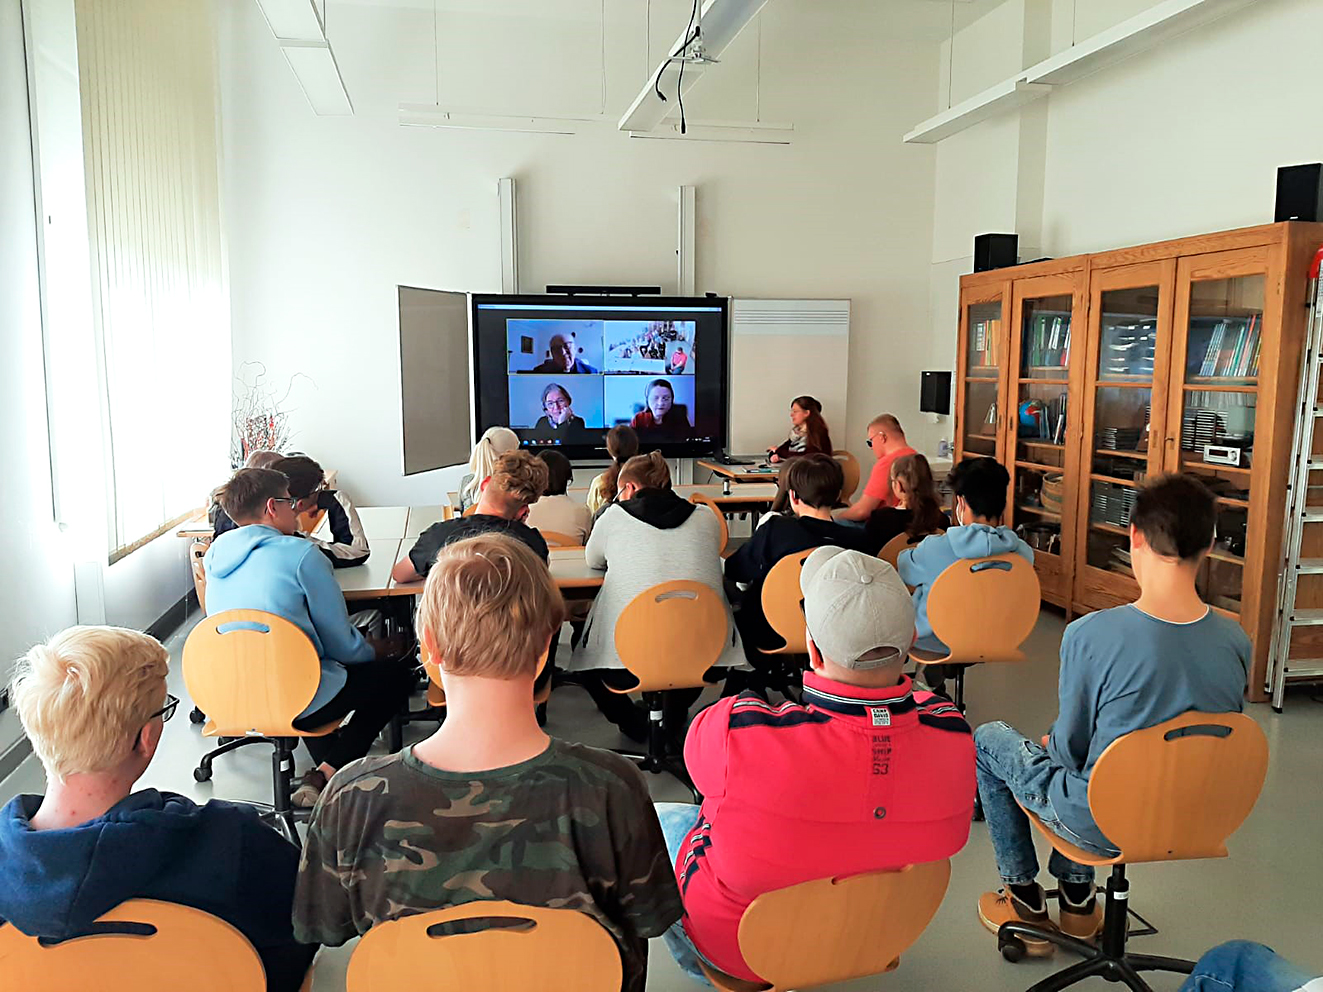 Das Bild zeigt Schülerinnen und Schüler von hinten. Sie sitzen auf Stühlen in einem Klassenzimmer und schauen Richtung digitaler Tafel. Auf dieser sieht man die Bilder von drei einzelnen Personen sowie ein Bild der Schülerinnen und Schüler in einer Videokonferenz.